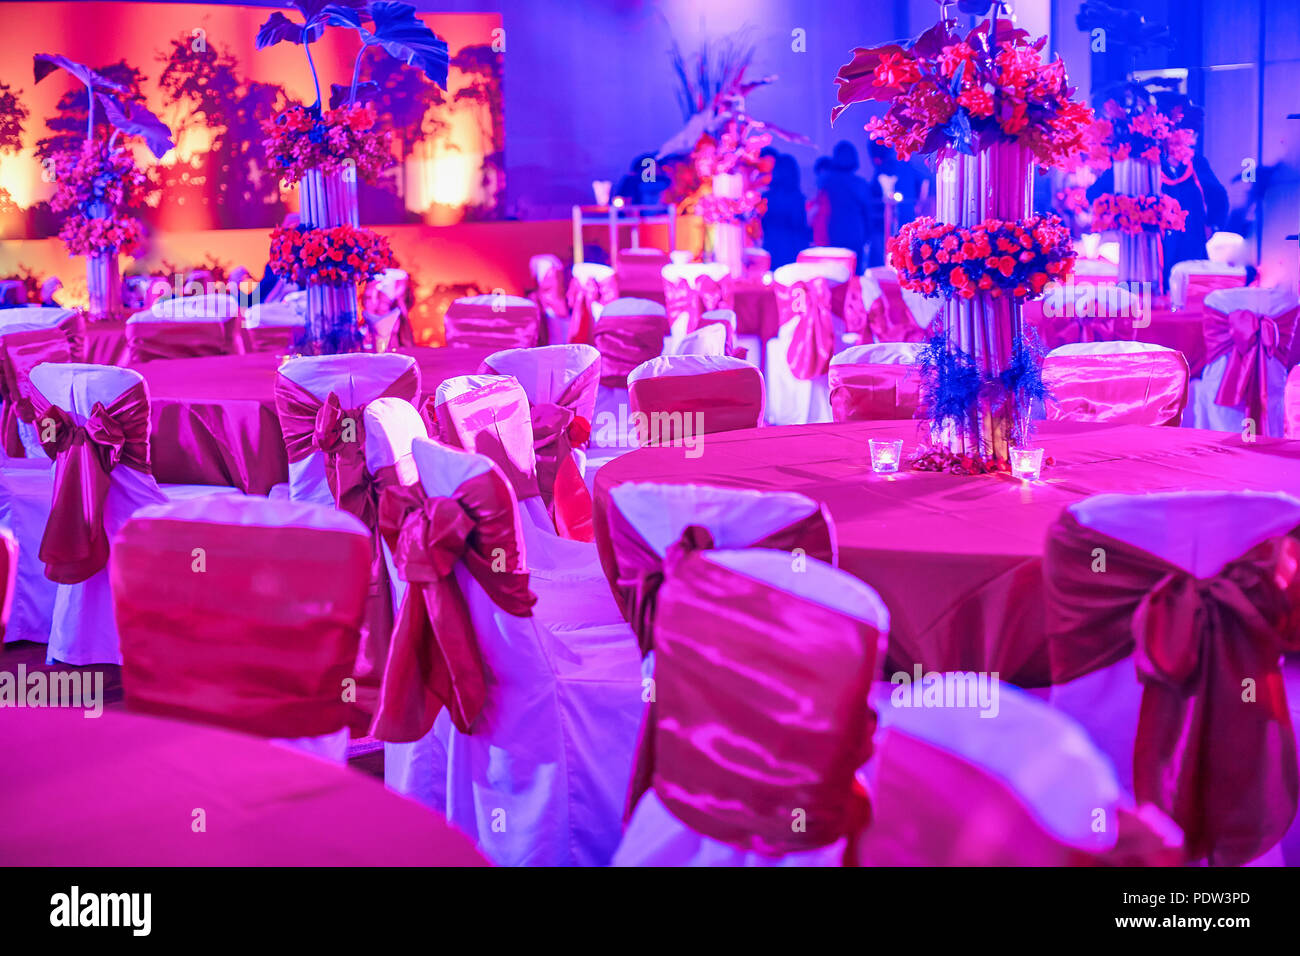 Indian ricevimento di nozze, tavolo da pranzo e sedie impostazioni decorare con vaso di fiori colorati, illuminazione a LED per la decorazione tradizionale indiana sangeet Foto Stock